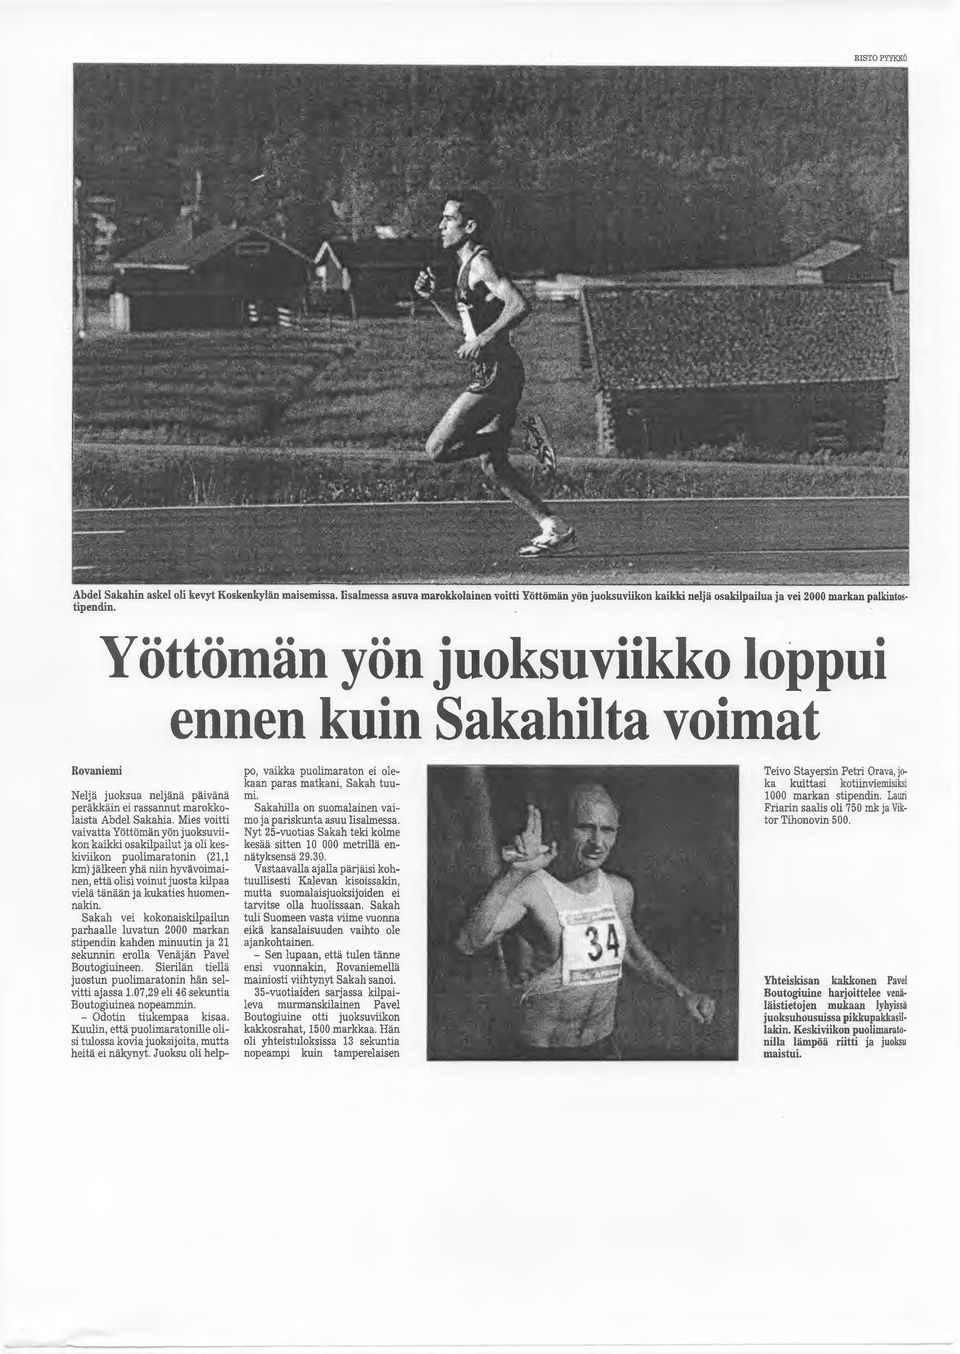 Mies voitti vaivatta Yöttömän yön juoksuviikon kaikki osakilpailut ja oli keskiviikon puolimaratonin (21,1 km) jälkeen yhä niin hyvävoimainen, että olisi voinut juosta kilpaa vielä tänään ja kukaties